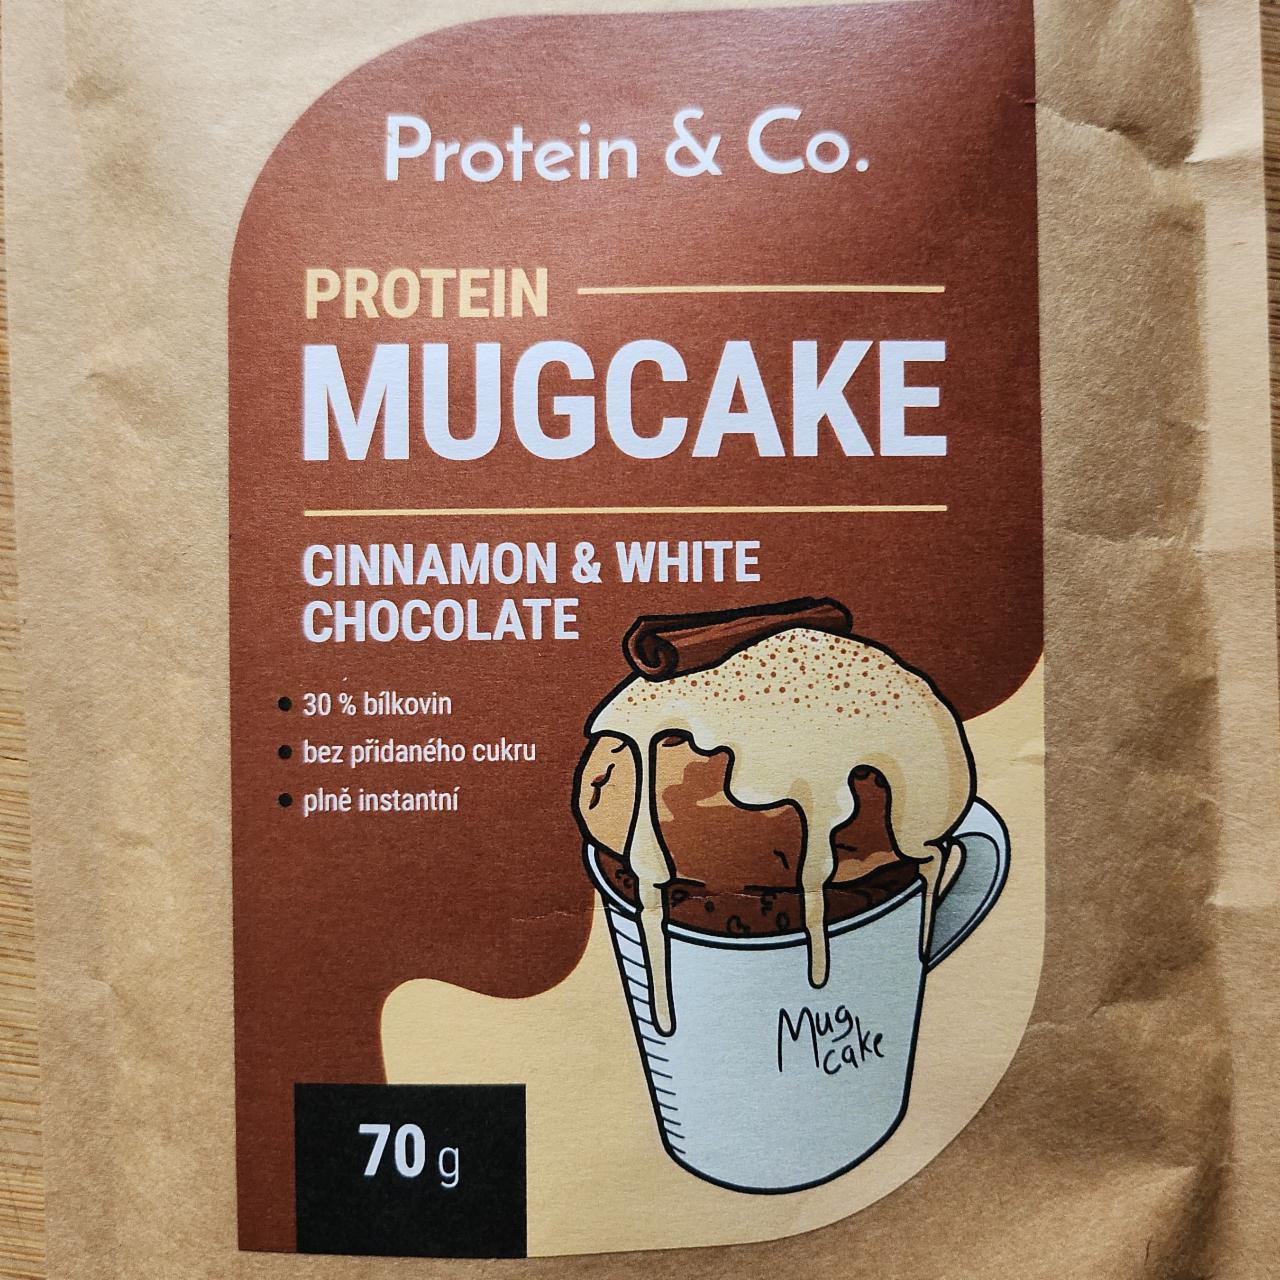 Fotografie - Protein Mugcake - Cinnamon & White Chocolate Protein & Co